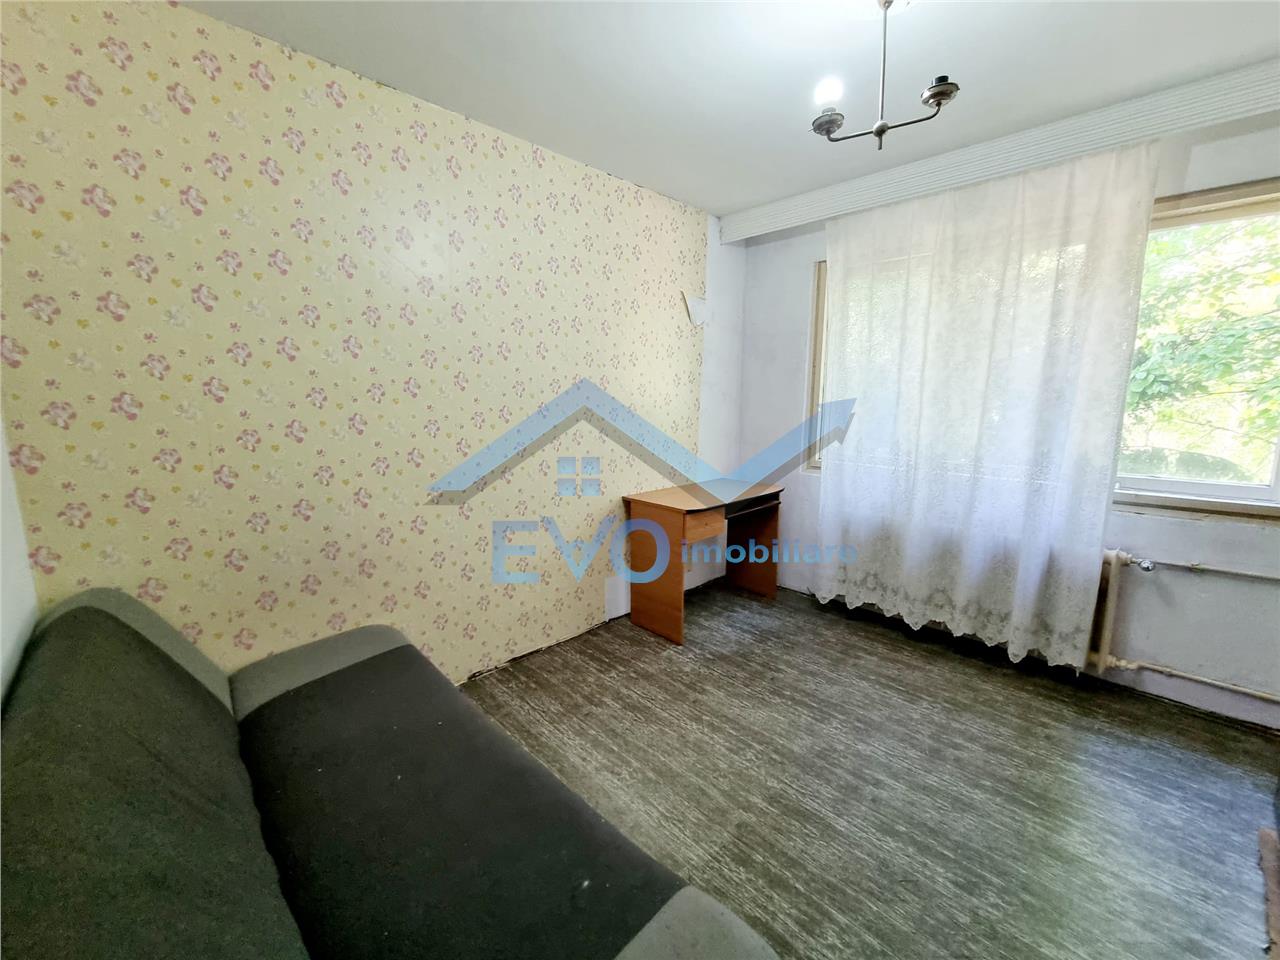 Vanzare Apartament cu 2 camere, 50mp, etajul 2 din 4, zona Tatarasi